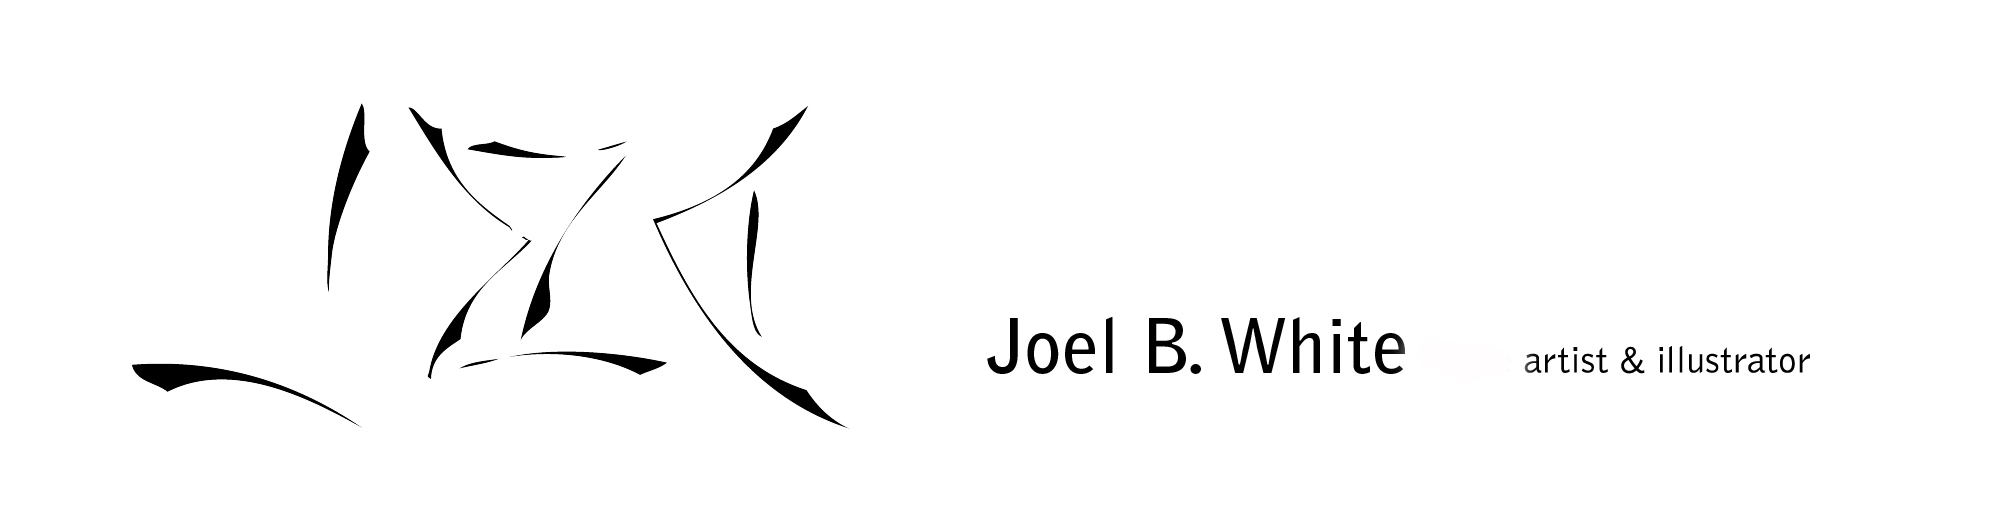 Joel B. White, artist and illustrator